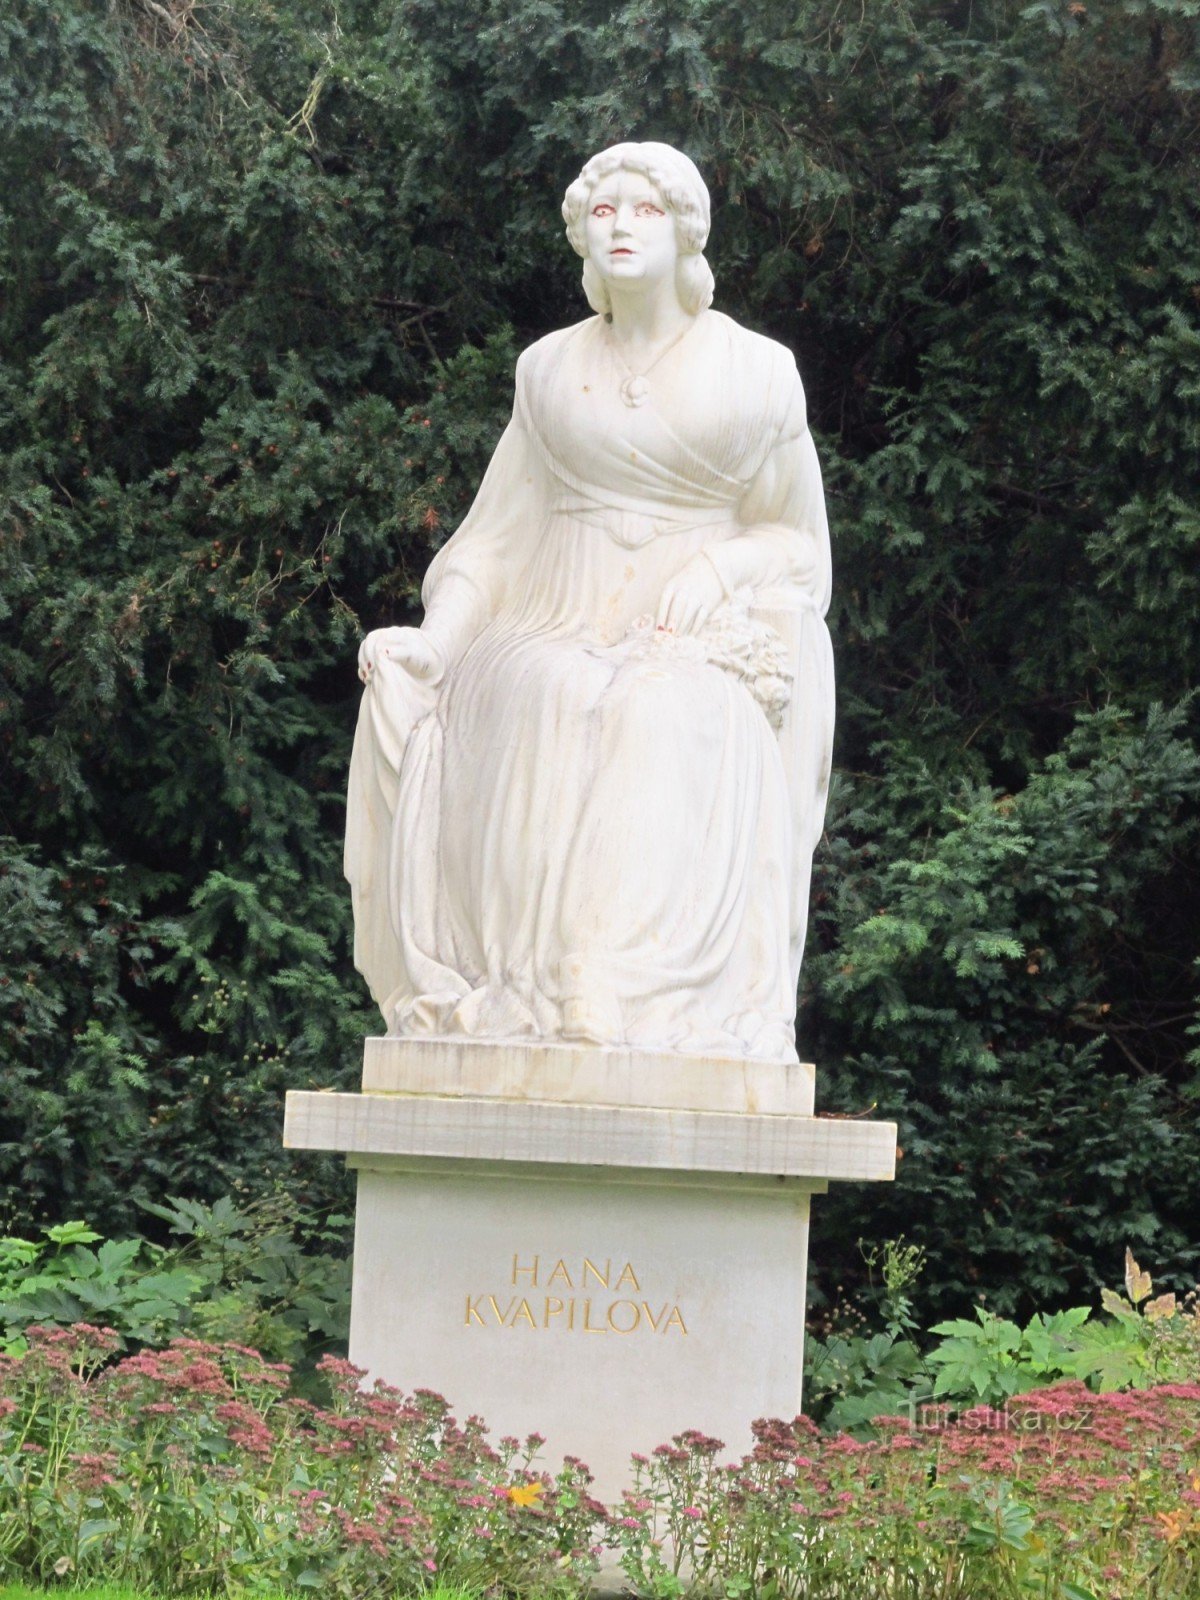 Spomenik Hani Kvapilová u vrtu Kinsky u Pragu